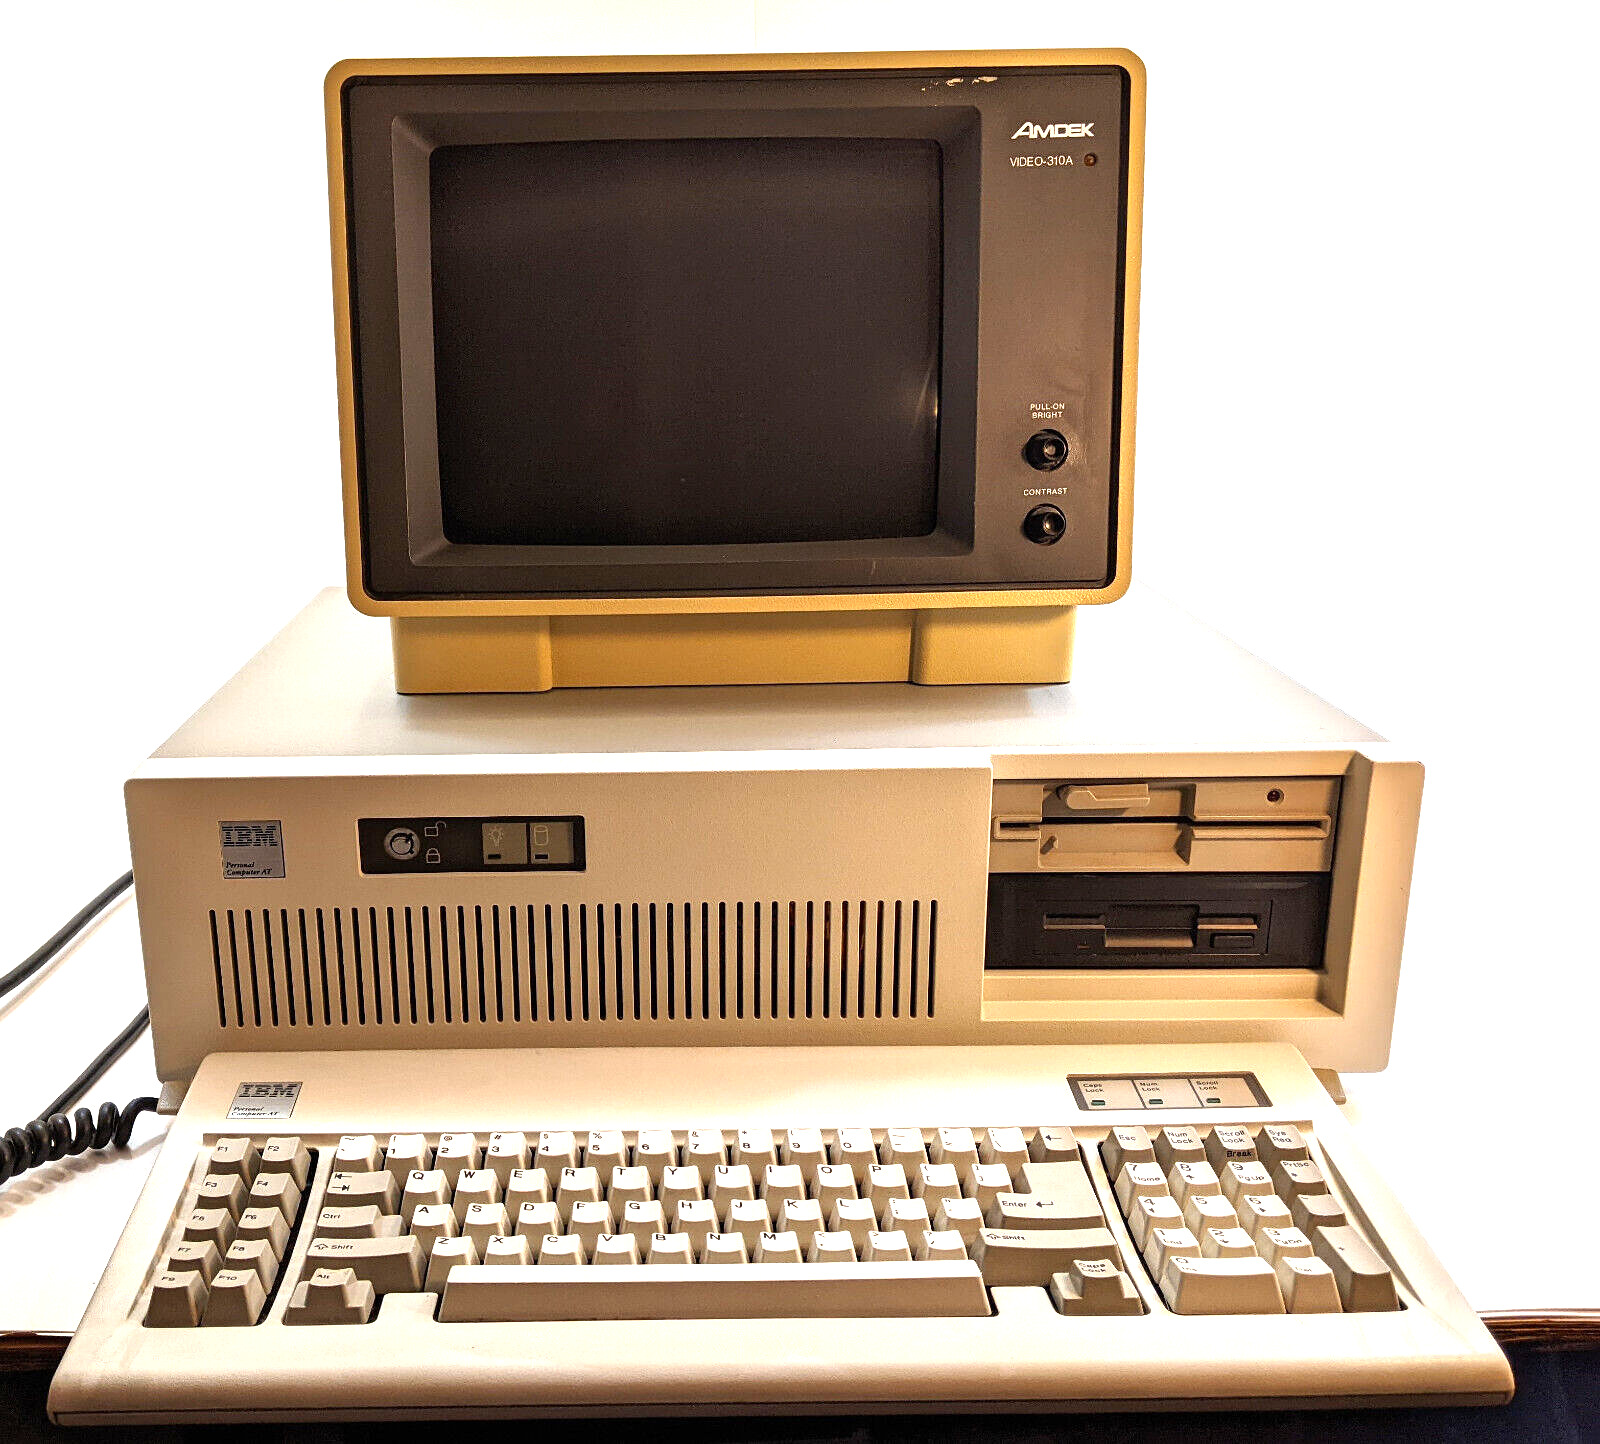 WORKING ORIGINAL IBM 5170 PC AT 2 Floppy Drives, Keyboard, AMDEK 310-A Monitor